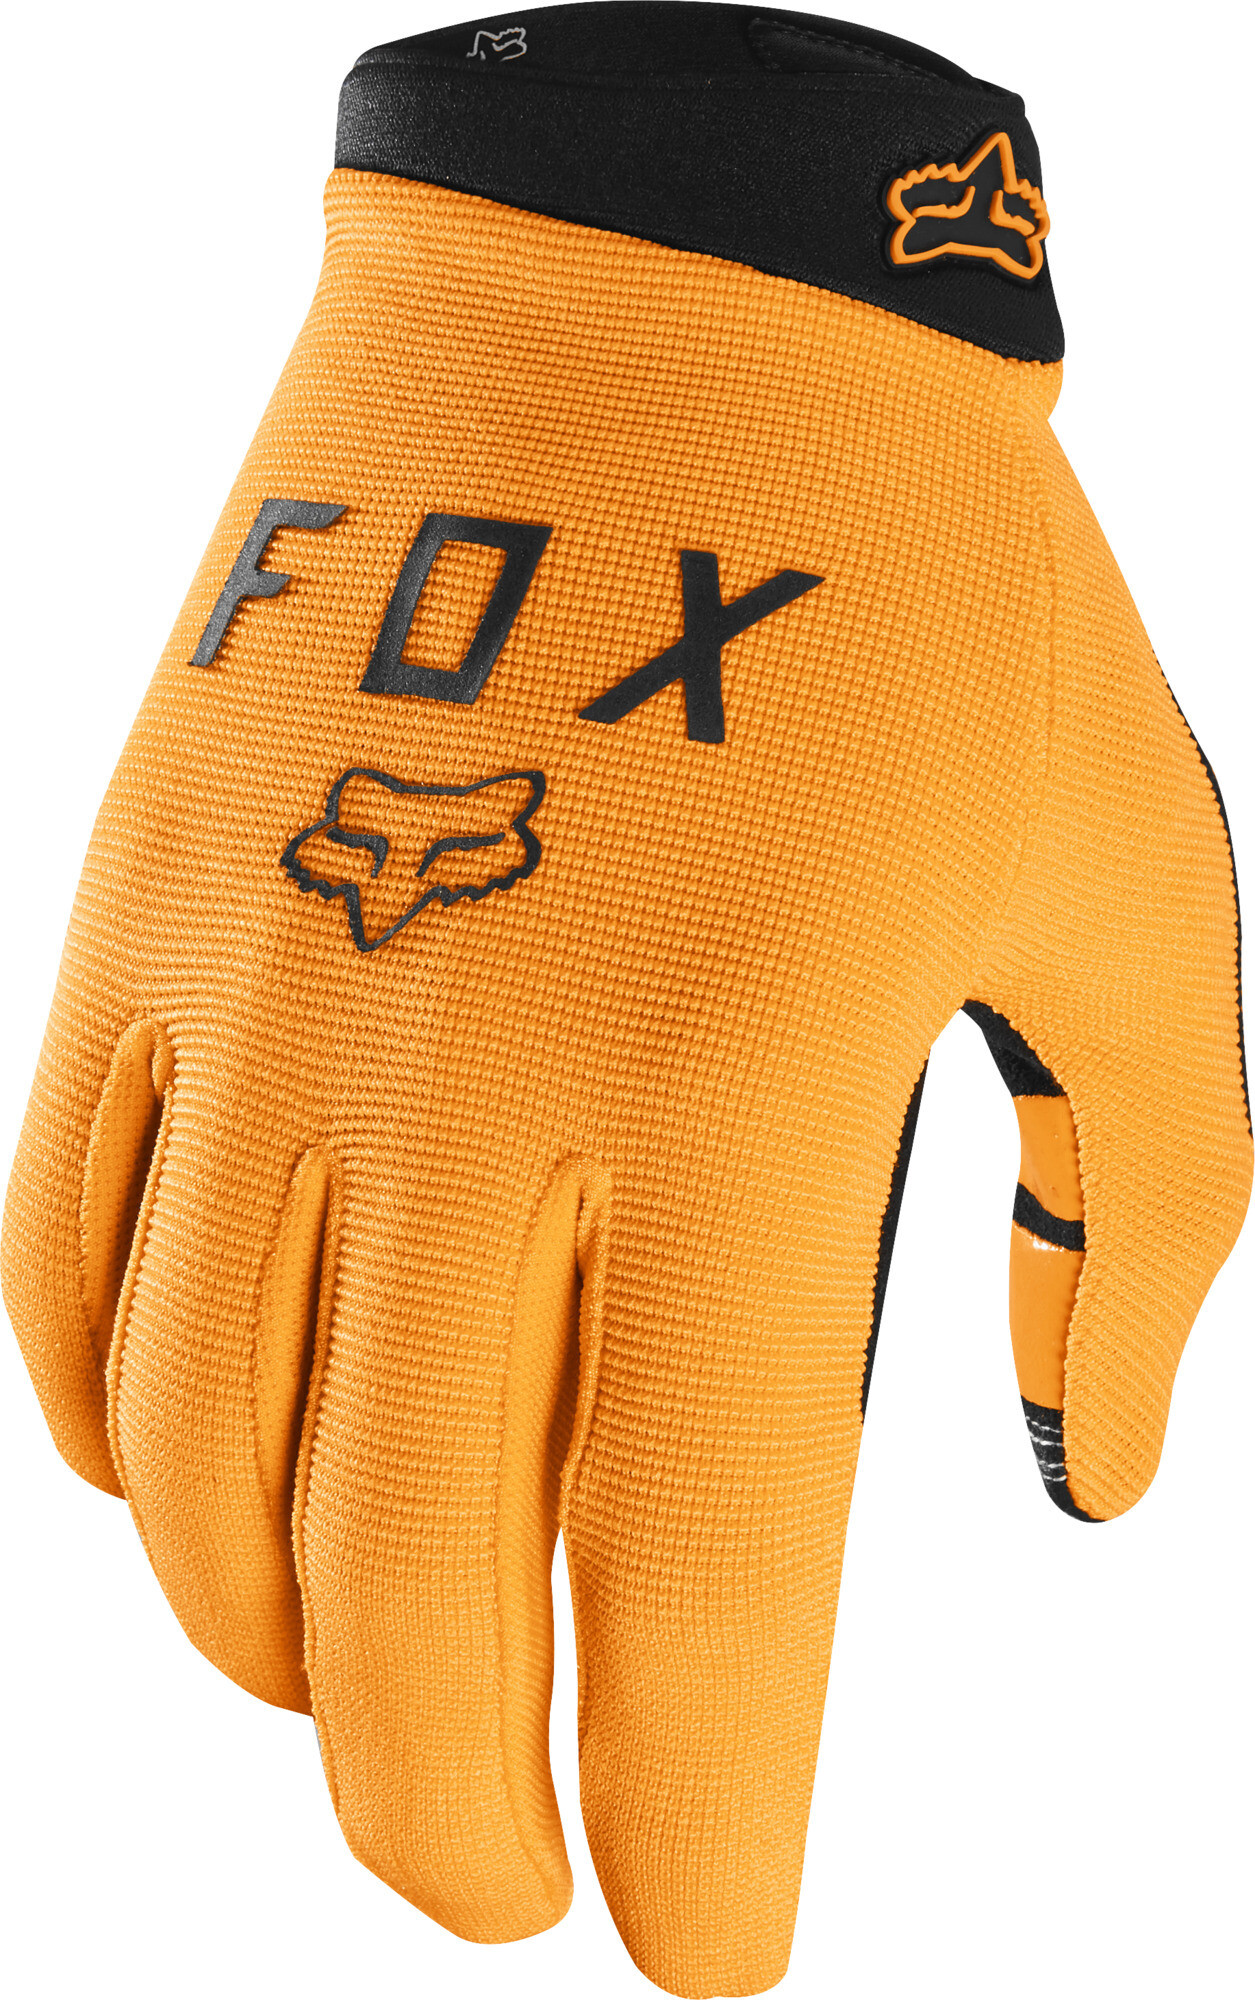 Перчатки Fox Ranger. Велоперчатки Fox Ranger 2019. Fox MTB Gloves Orange. Atomic перчатки. Fox ranger